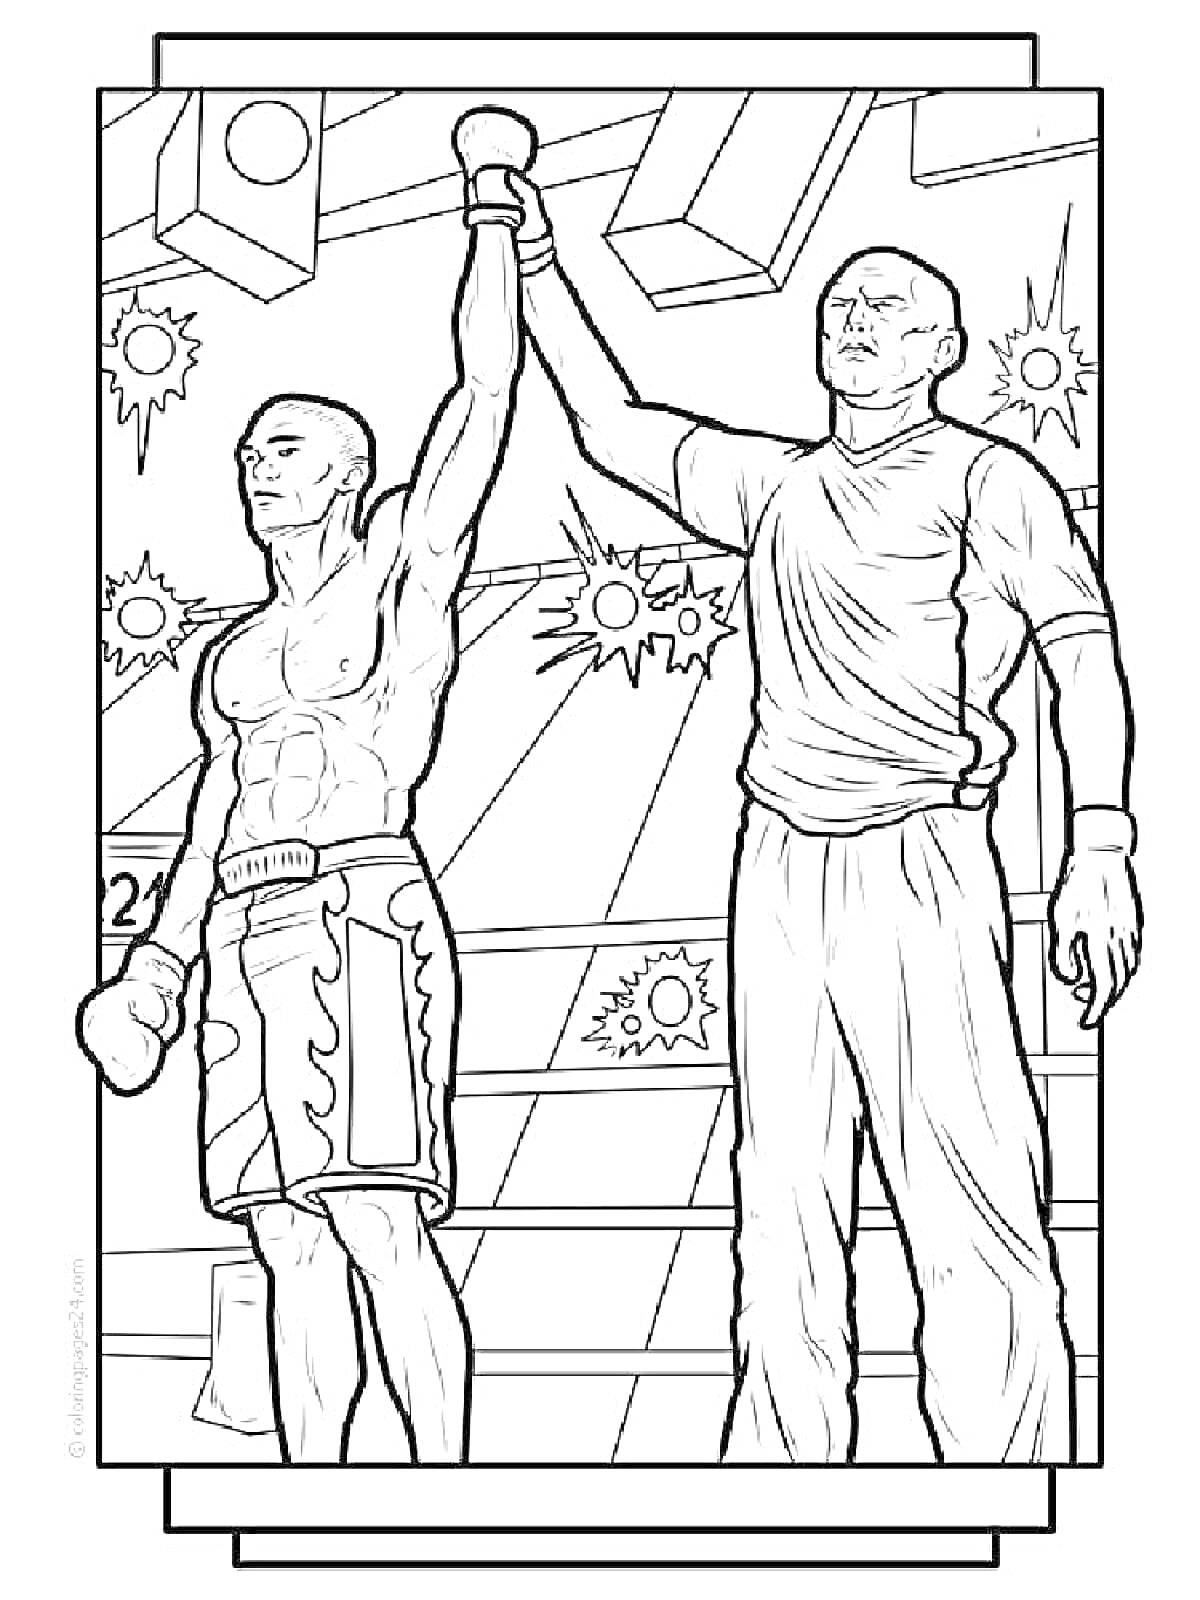 Раскраска Боксер в ринге с поднятой рукой, объявление победителя